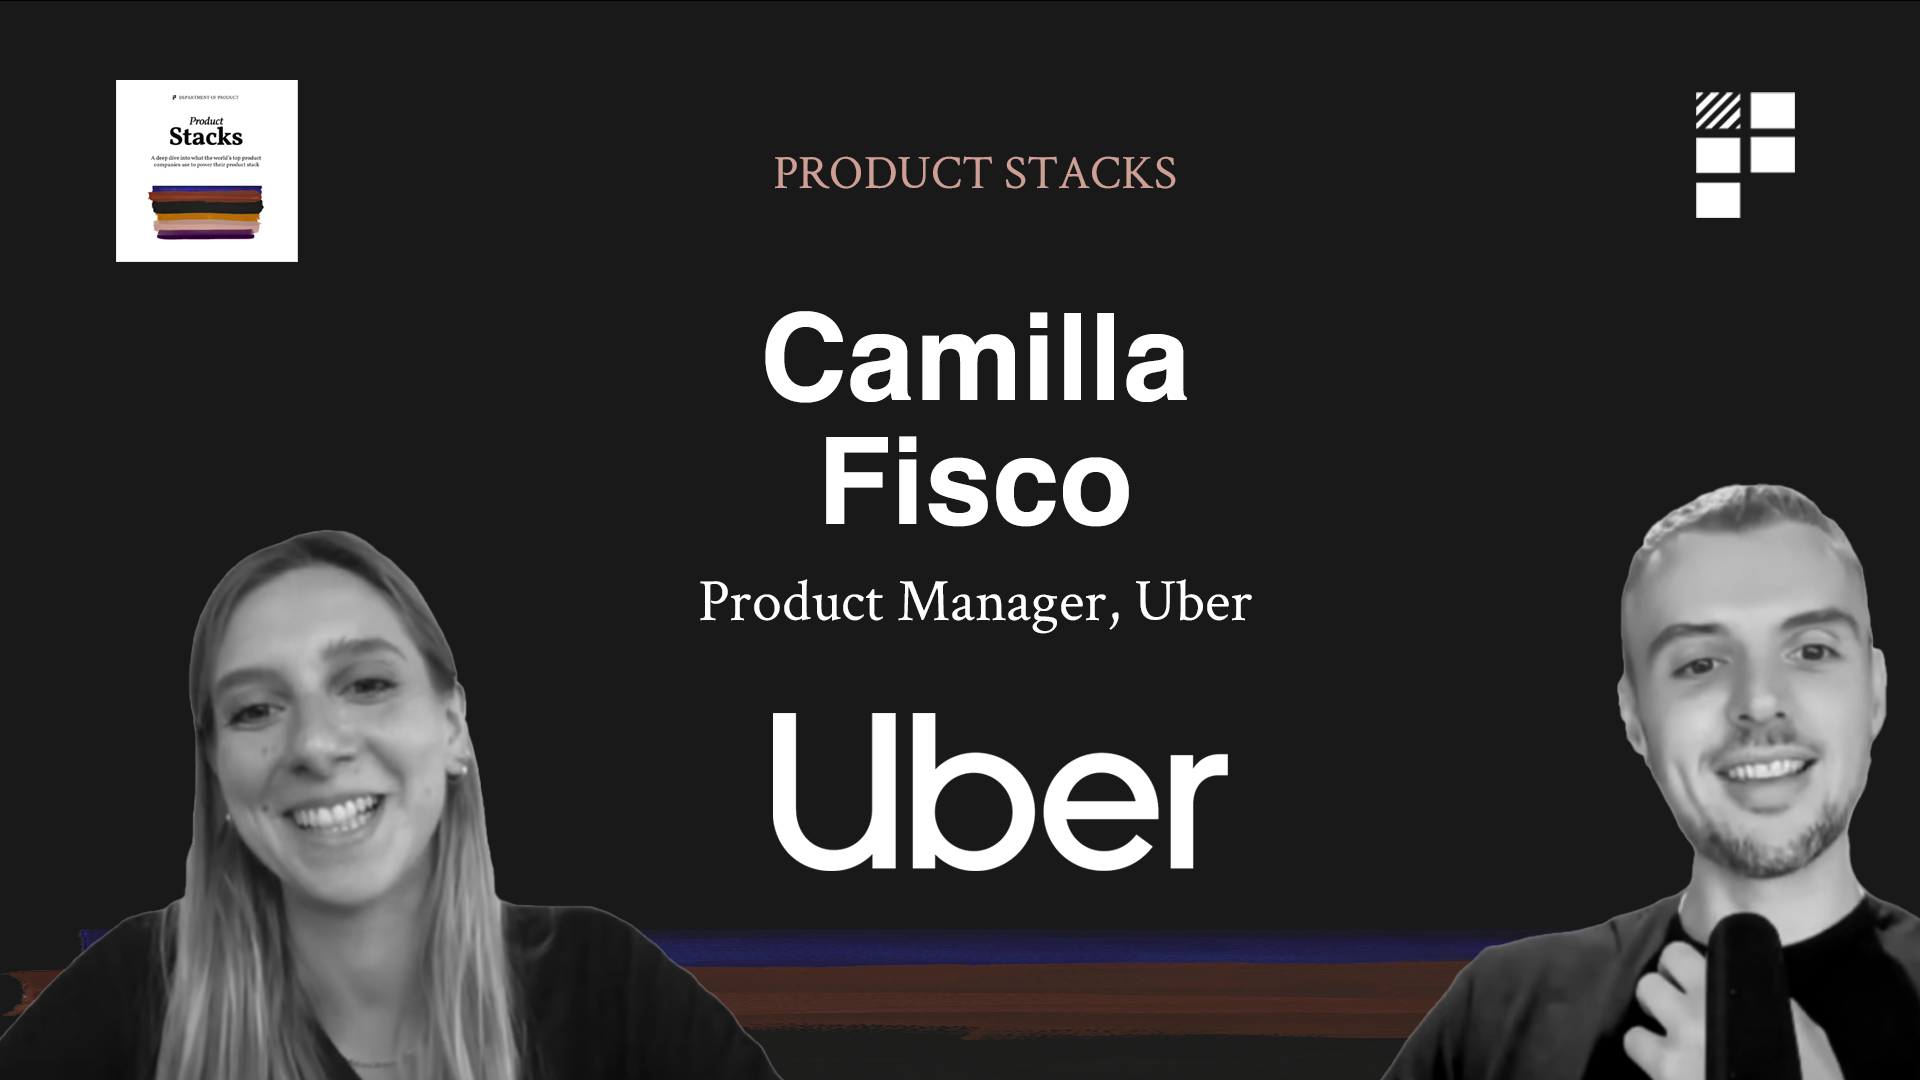 Camilla at Uber